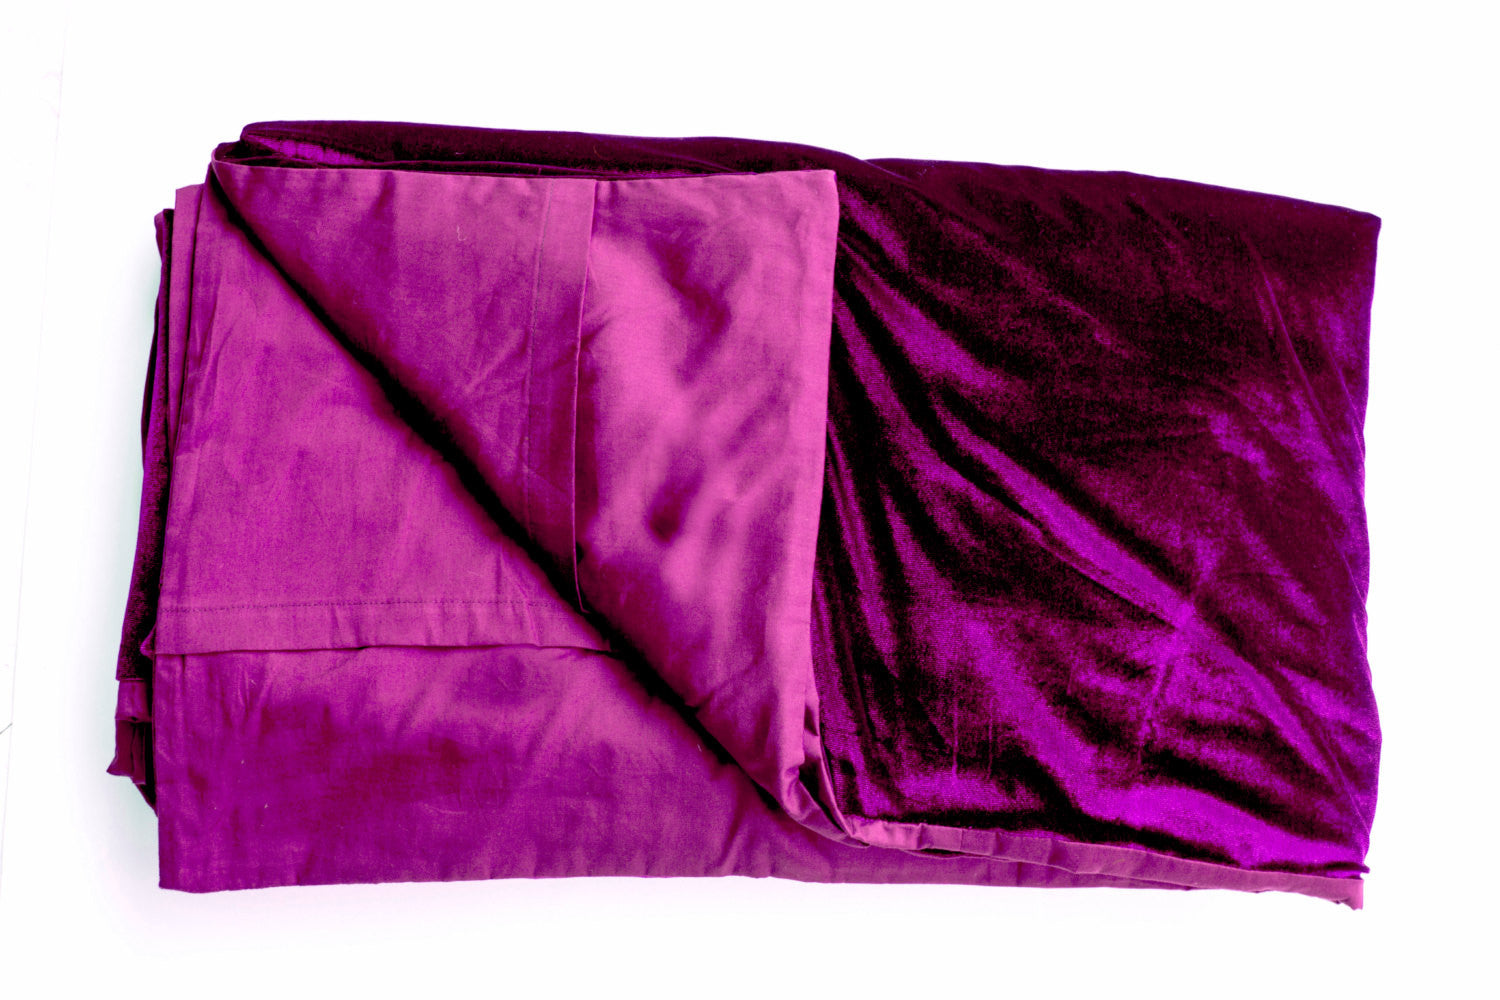 Luxury king size purple bedspread